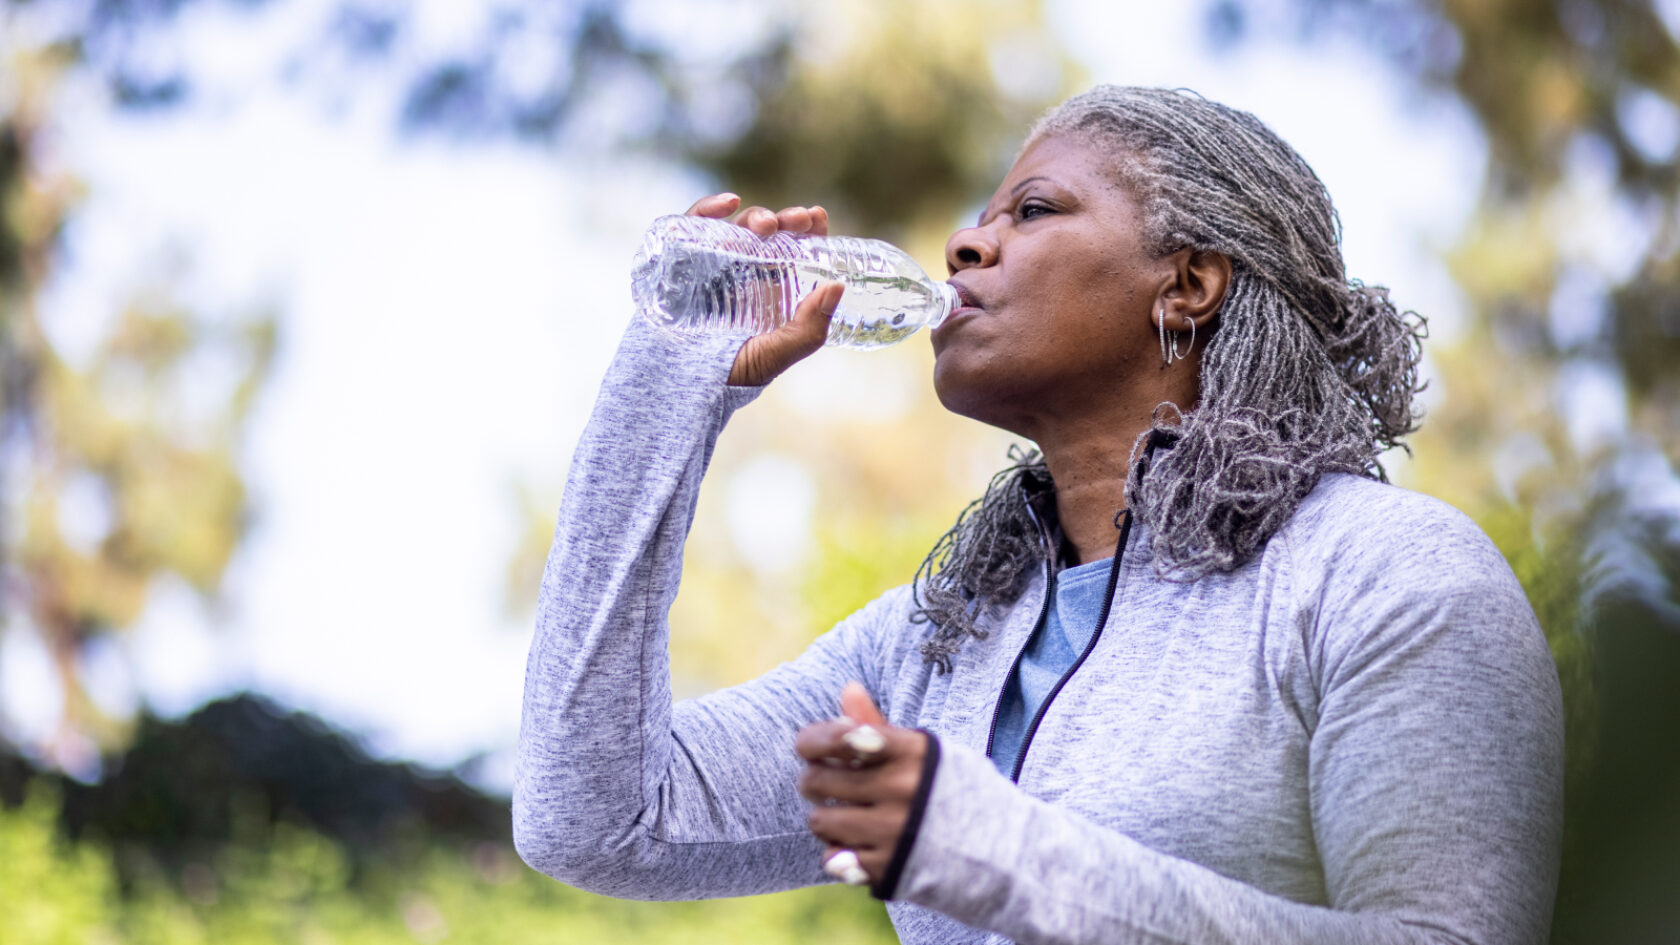 Una mujer se mantiene hidratada mientras hace ejercicio en el exterior.